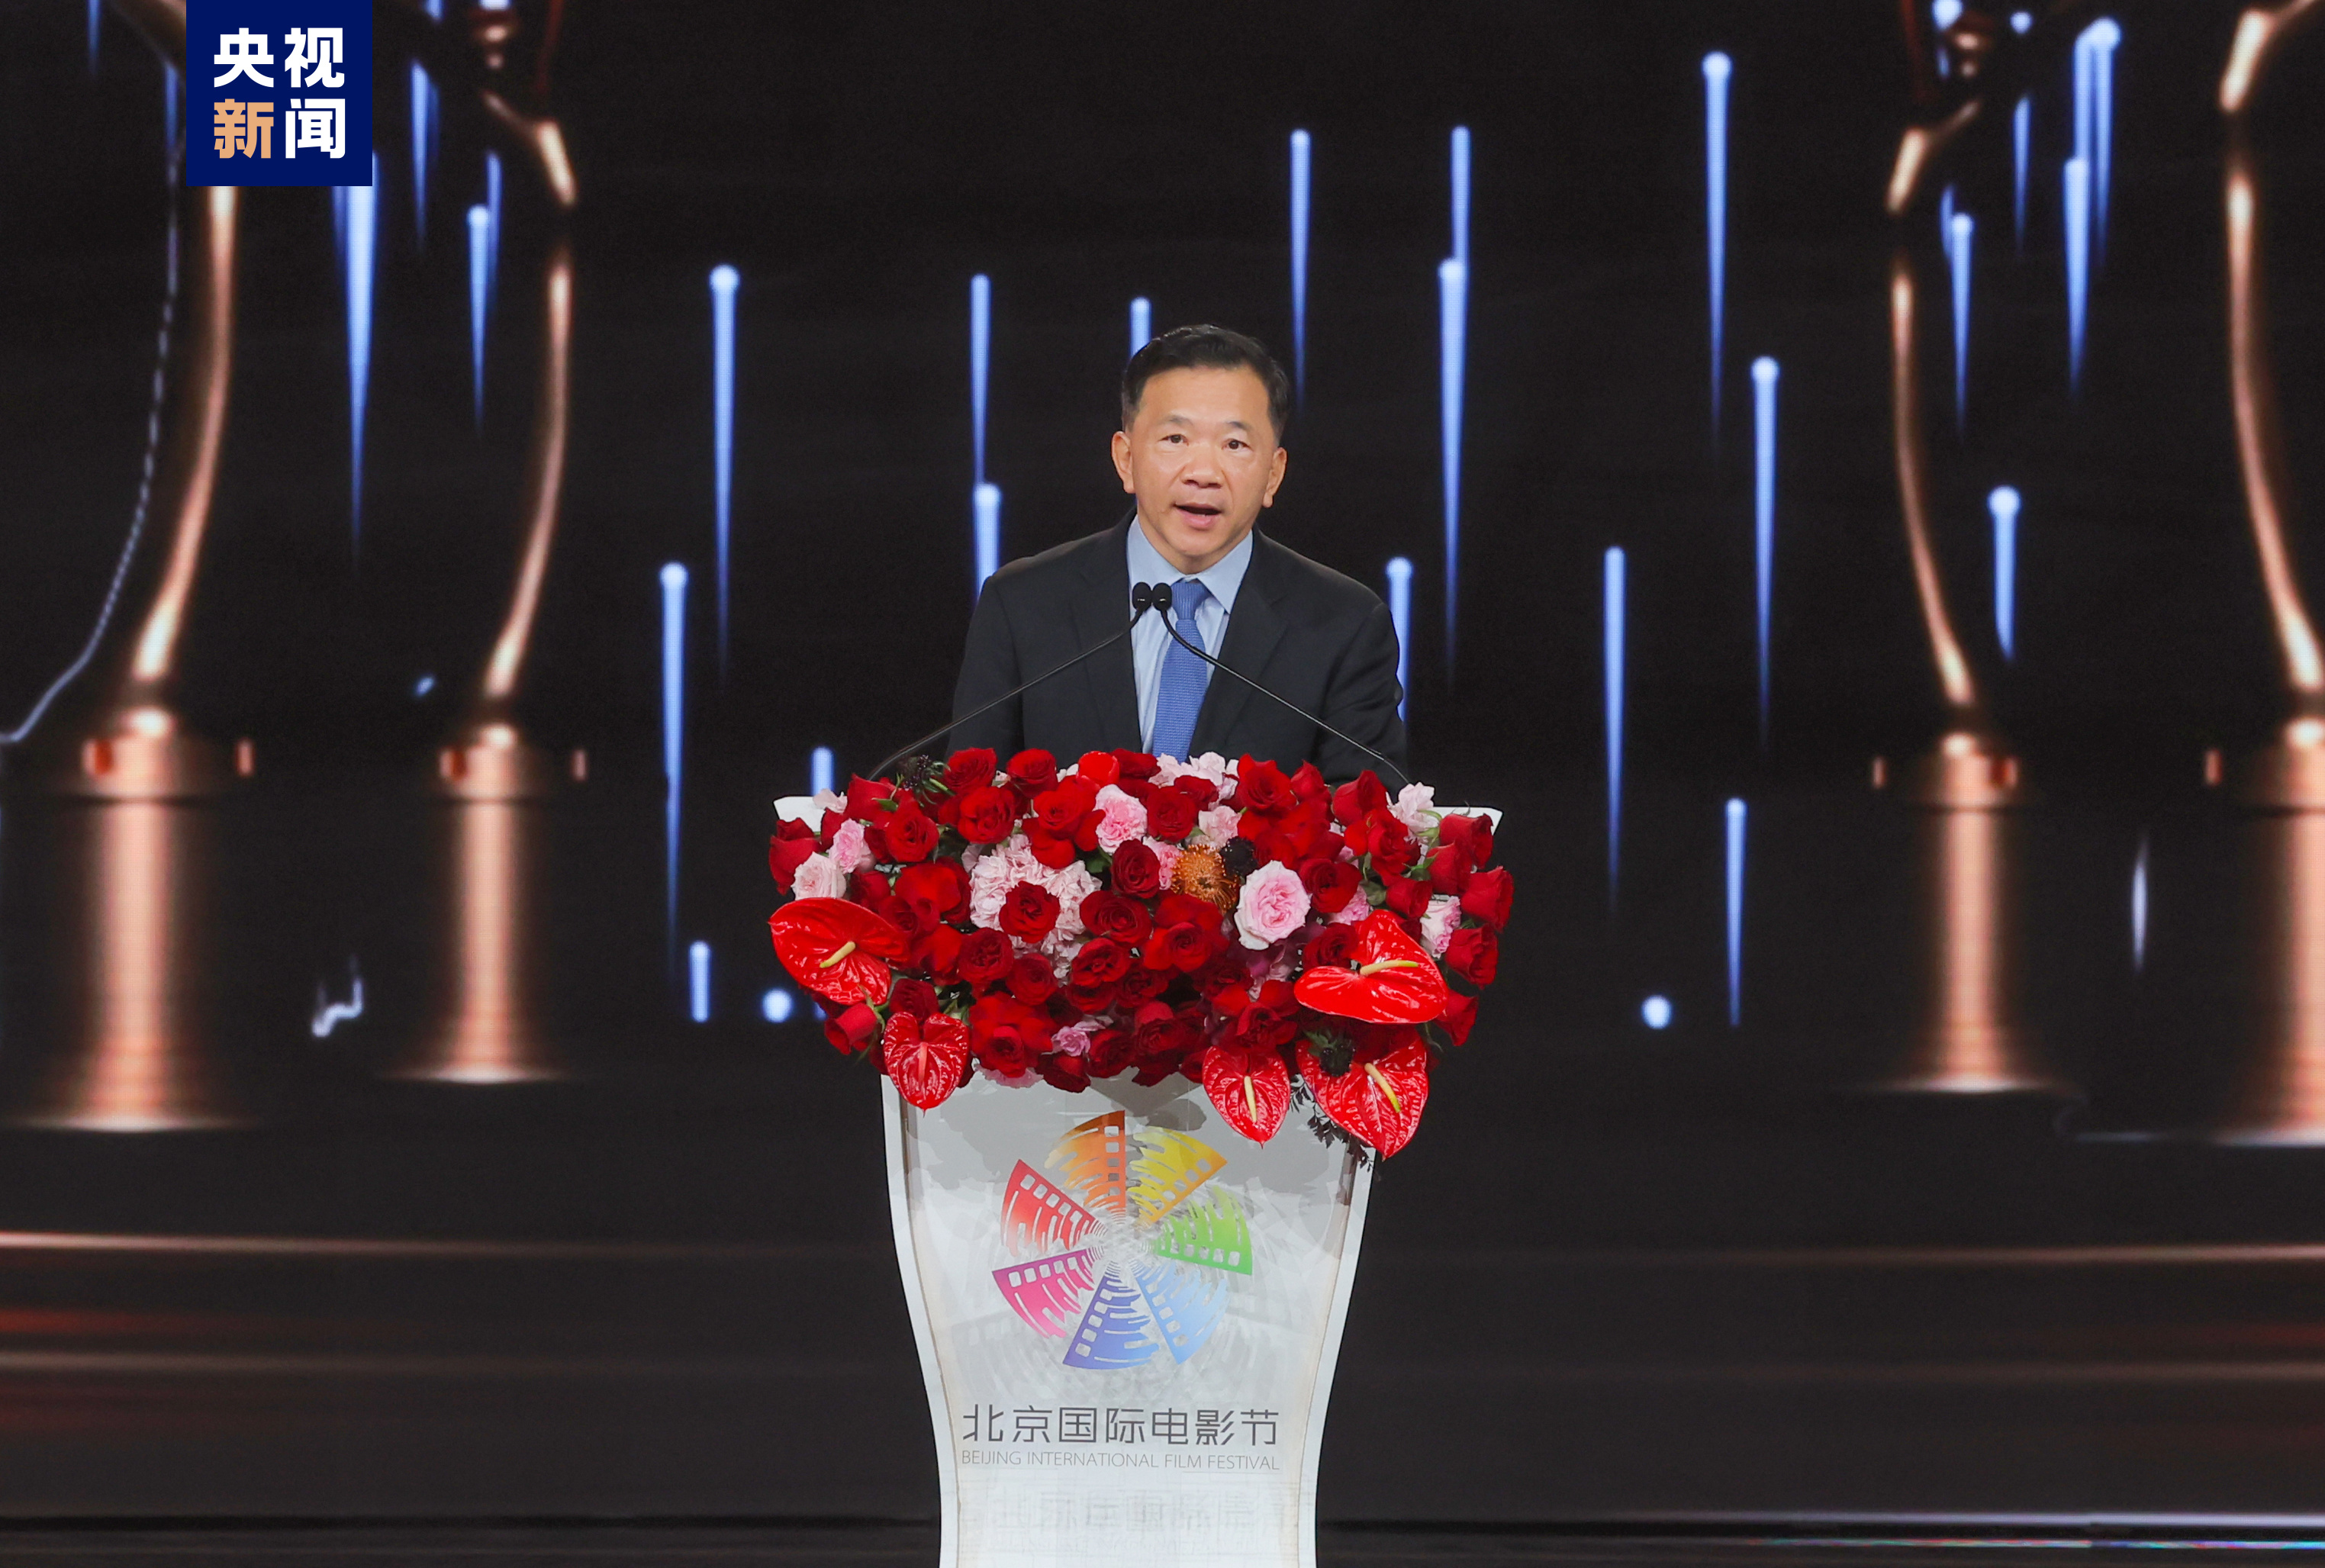 中宣部副部长、中央广播电视总台台长、第十四届北京国际电影节组委会主席慎海雄致辞